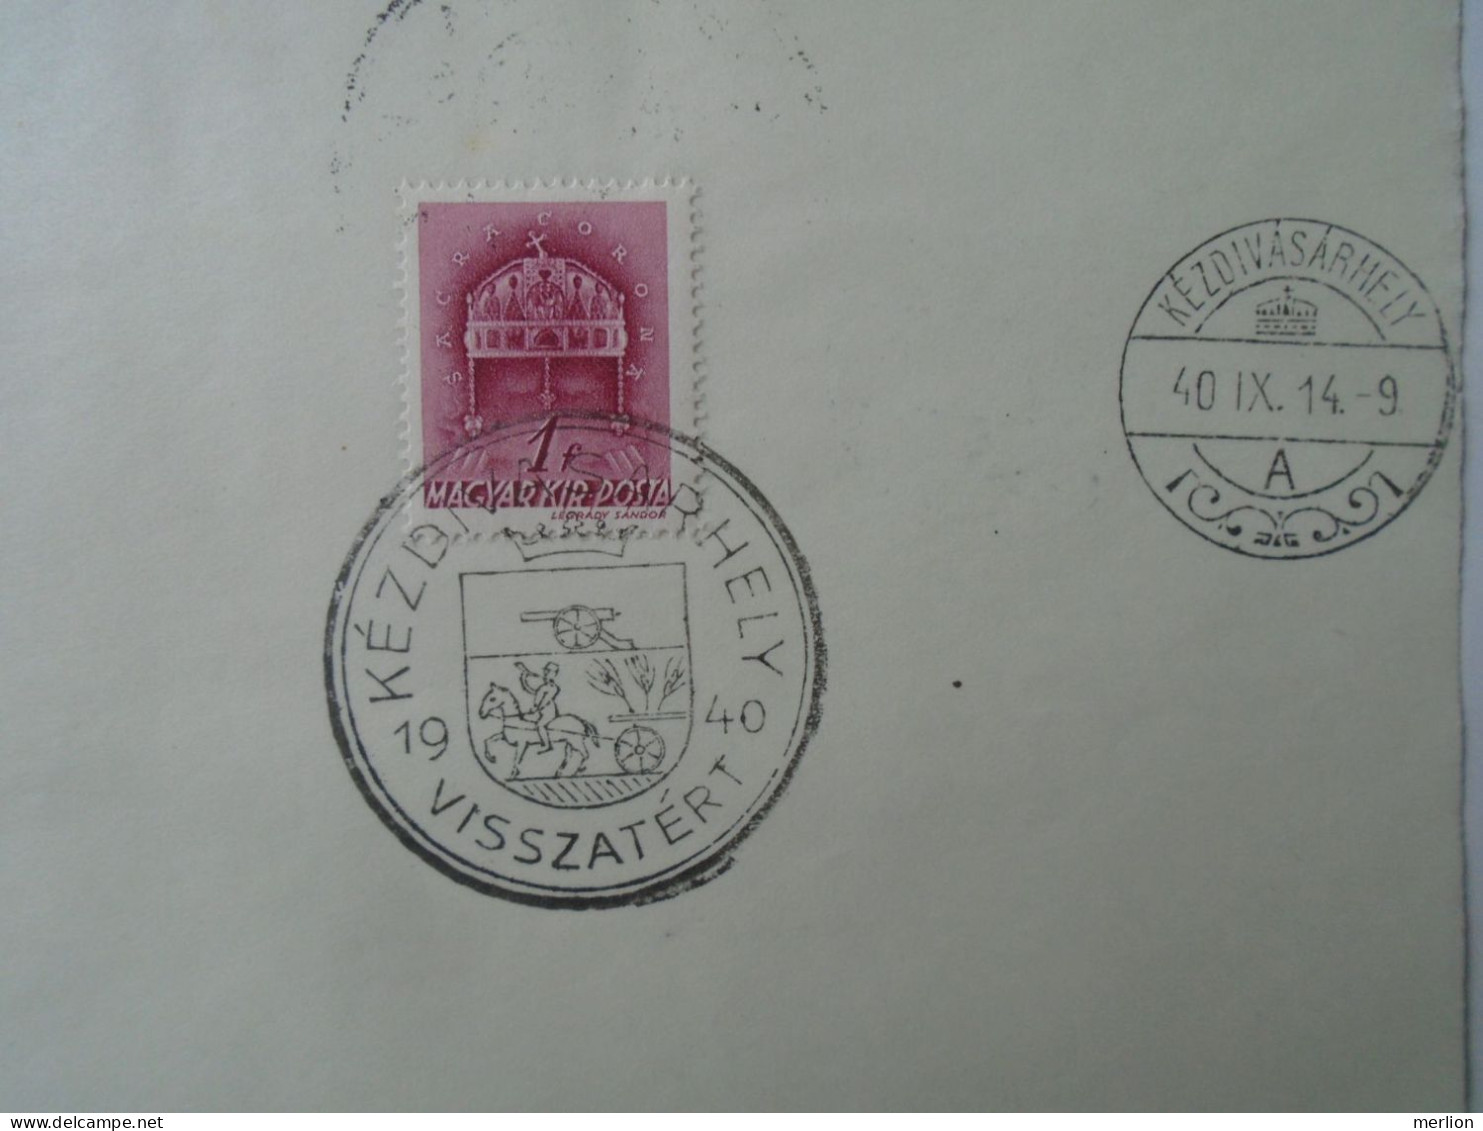 ZA451.21 Hungary- Szilágsomlyó, Nagyvárad, Kézdivásárhely, Kolozsvár Visszatért -Commemorative Postmark 1940 - Poststempel (Marcophilie)